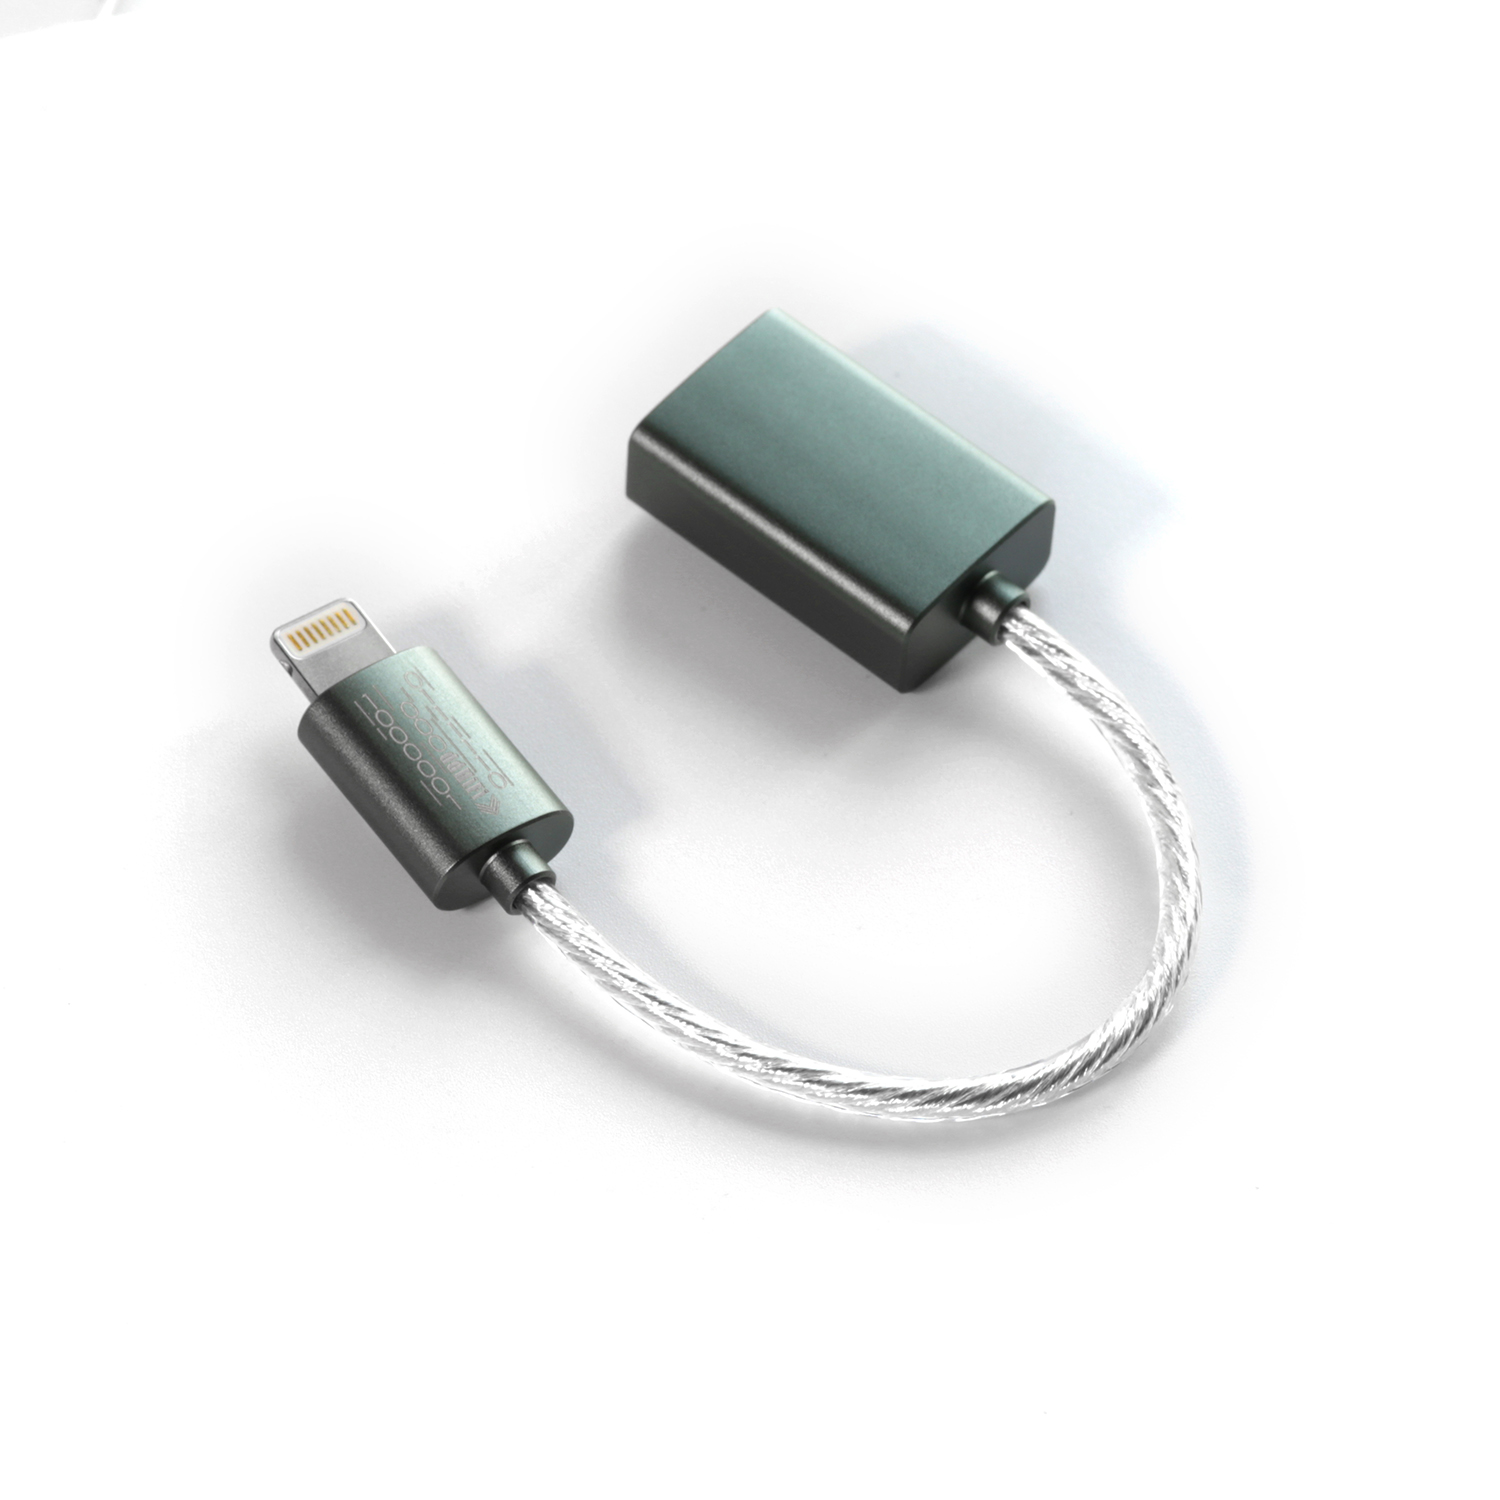 Dd Ddhifi MFi06F Lightning Naar USB-A Usb Otg Audio Kabel Om Ios-apparaten Met USB-A Dac/Amp